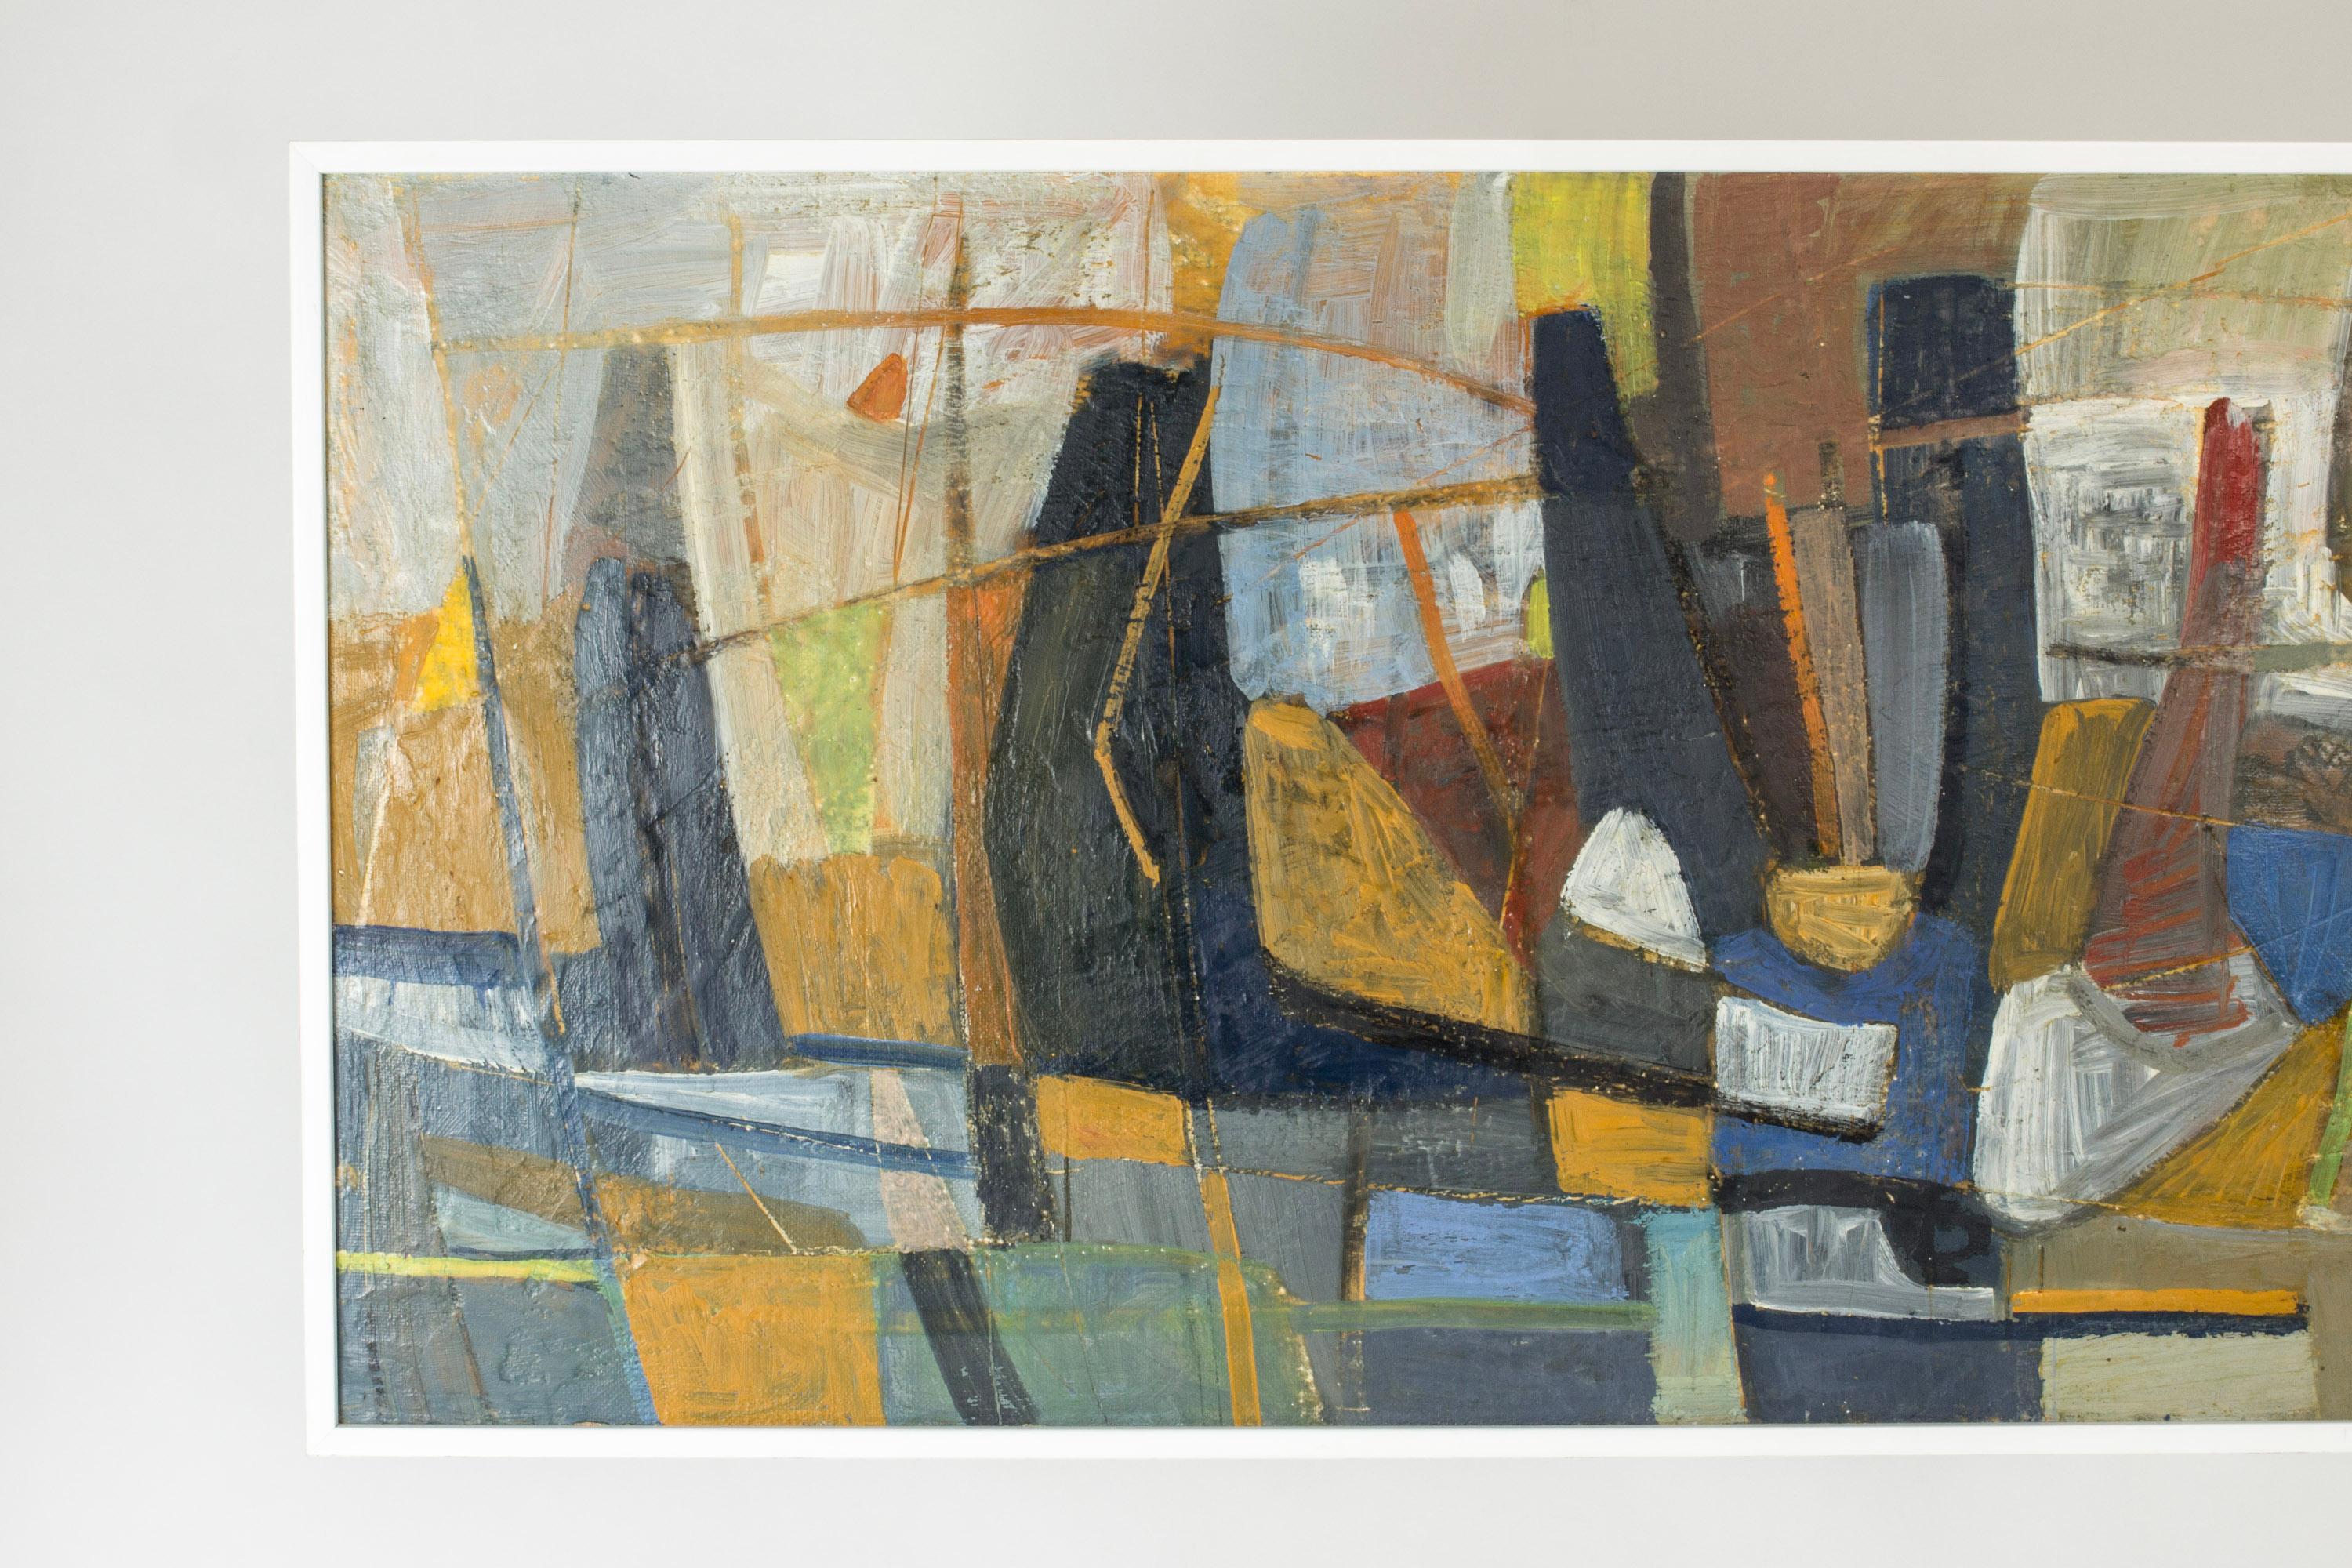 Großes Ölgemälde von Nils Wedel (1897-1967) mit einem abstrakten Motiv. Gedämpfte, natürliche Farben verbinden sich mit auffälligem Orange und Blau in asymmetrischen, grafischen Formen.